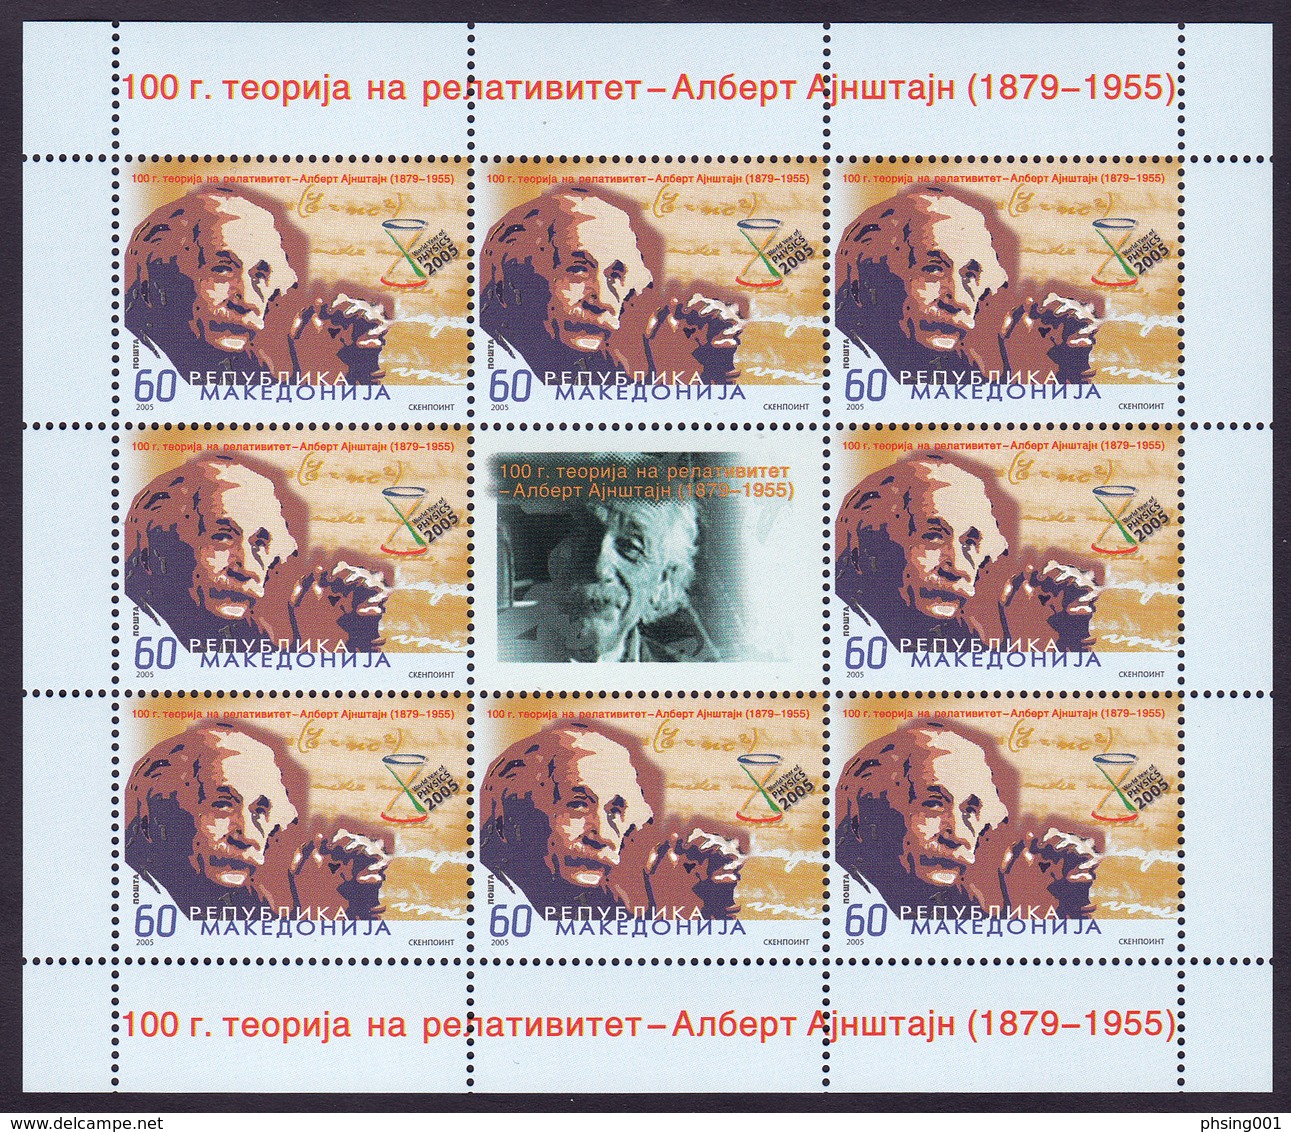 Macedonia 2005 Albert Einstein, Science, Theory Of Relativity, Mini Sheet MNH - Albert Einstein